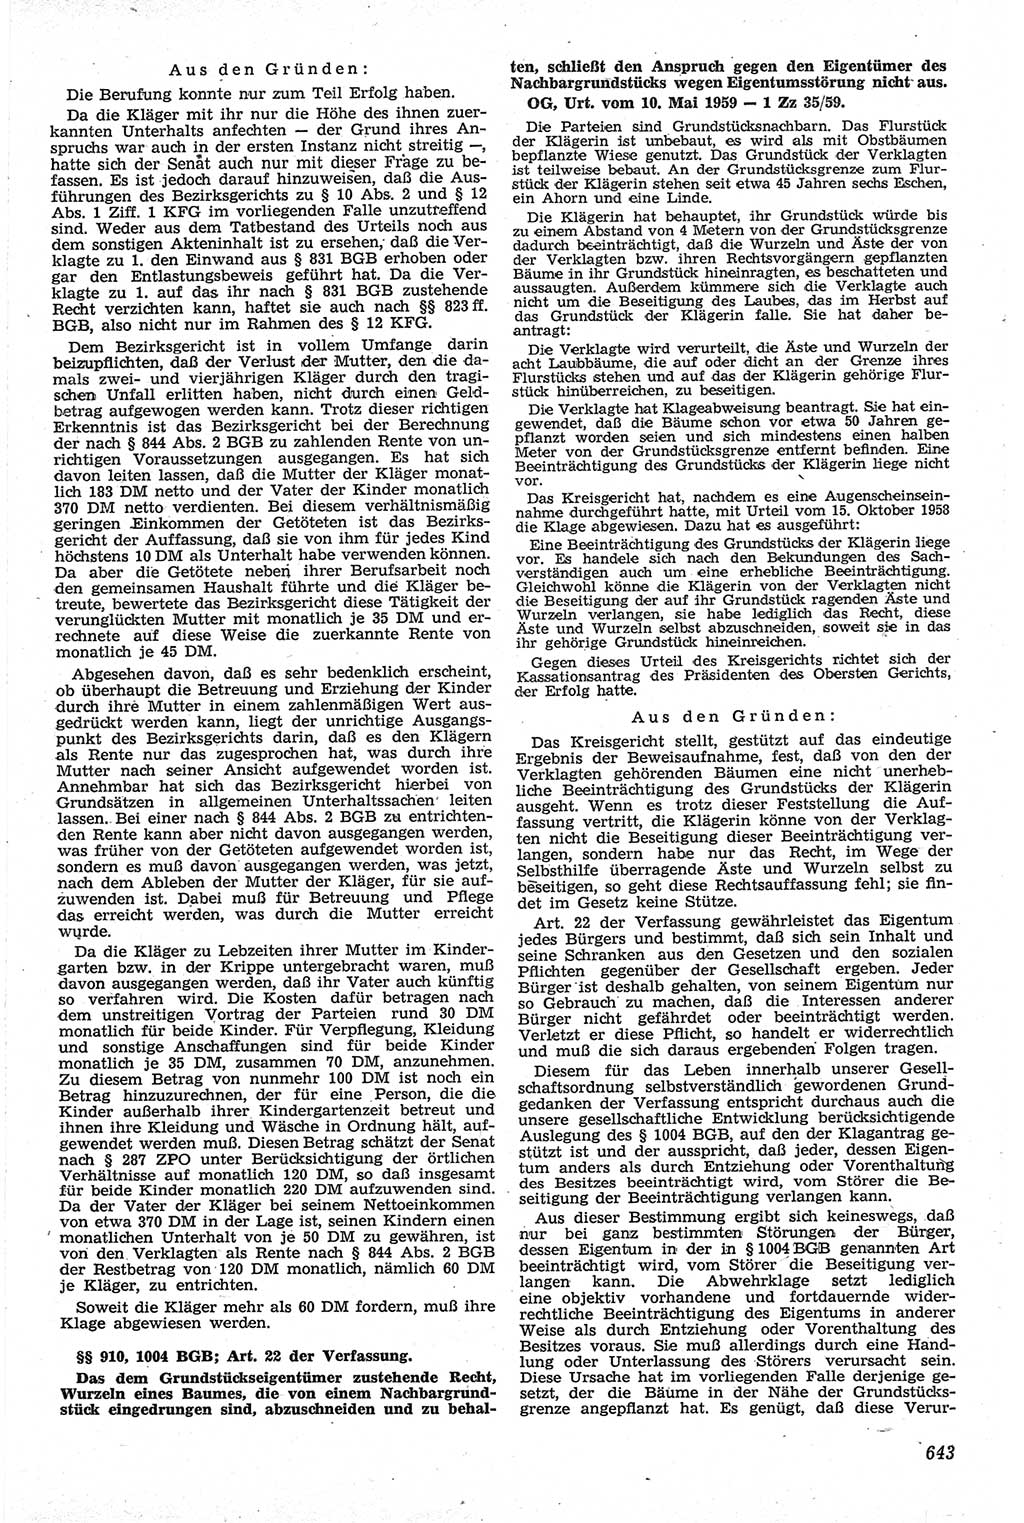 Neue Justiz (NJ), Zeitschrift für Recht und Rechtswissenschaft [Deutsche Demokratische Republik (DDR)], 13. Jahrgang 1959, Seite 643 (NJ DDR 1959, S. 643)